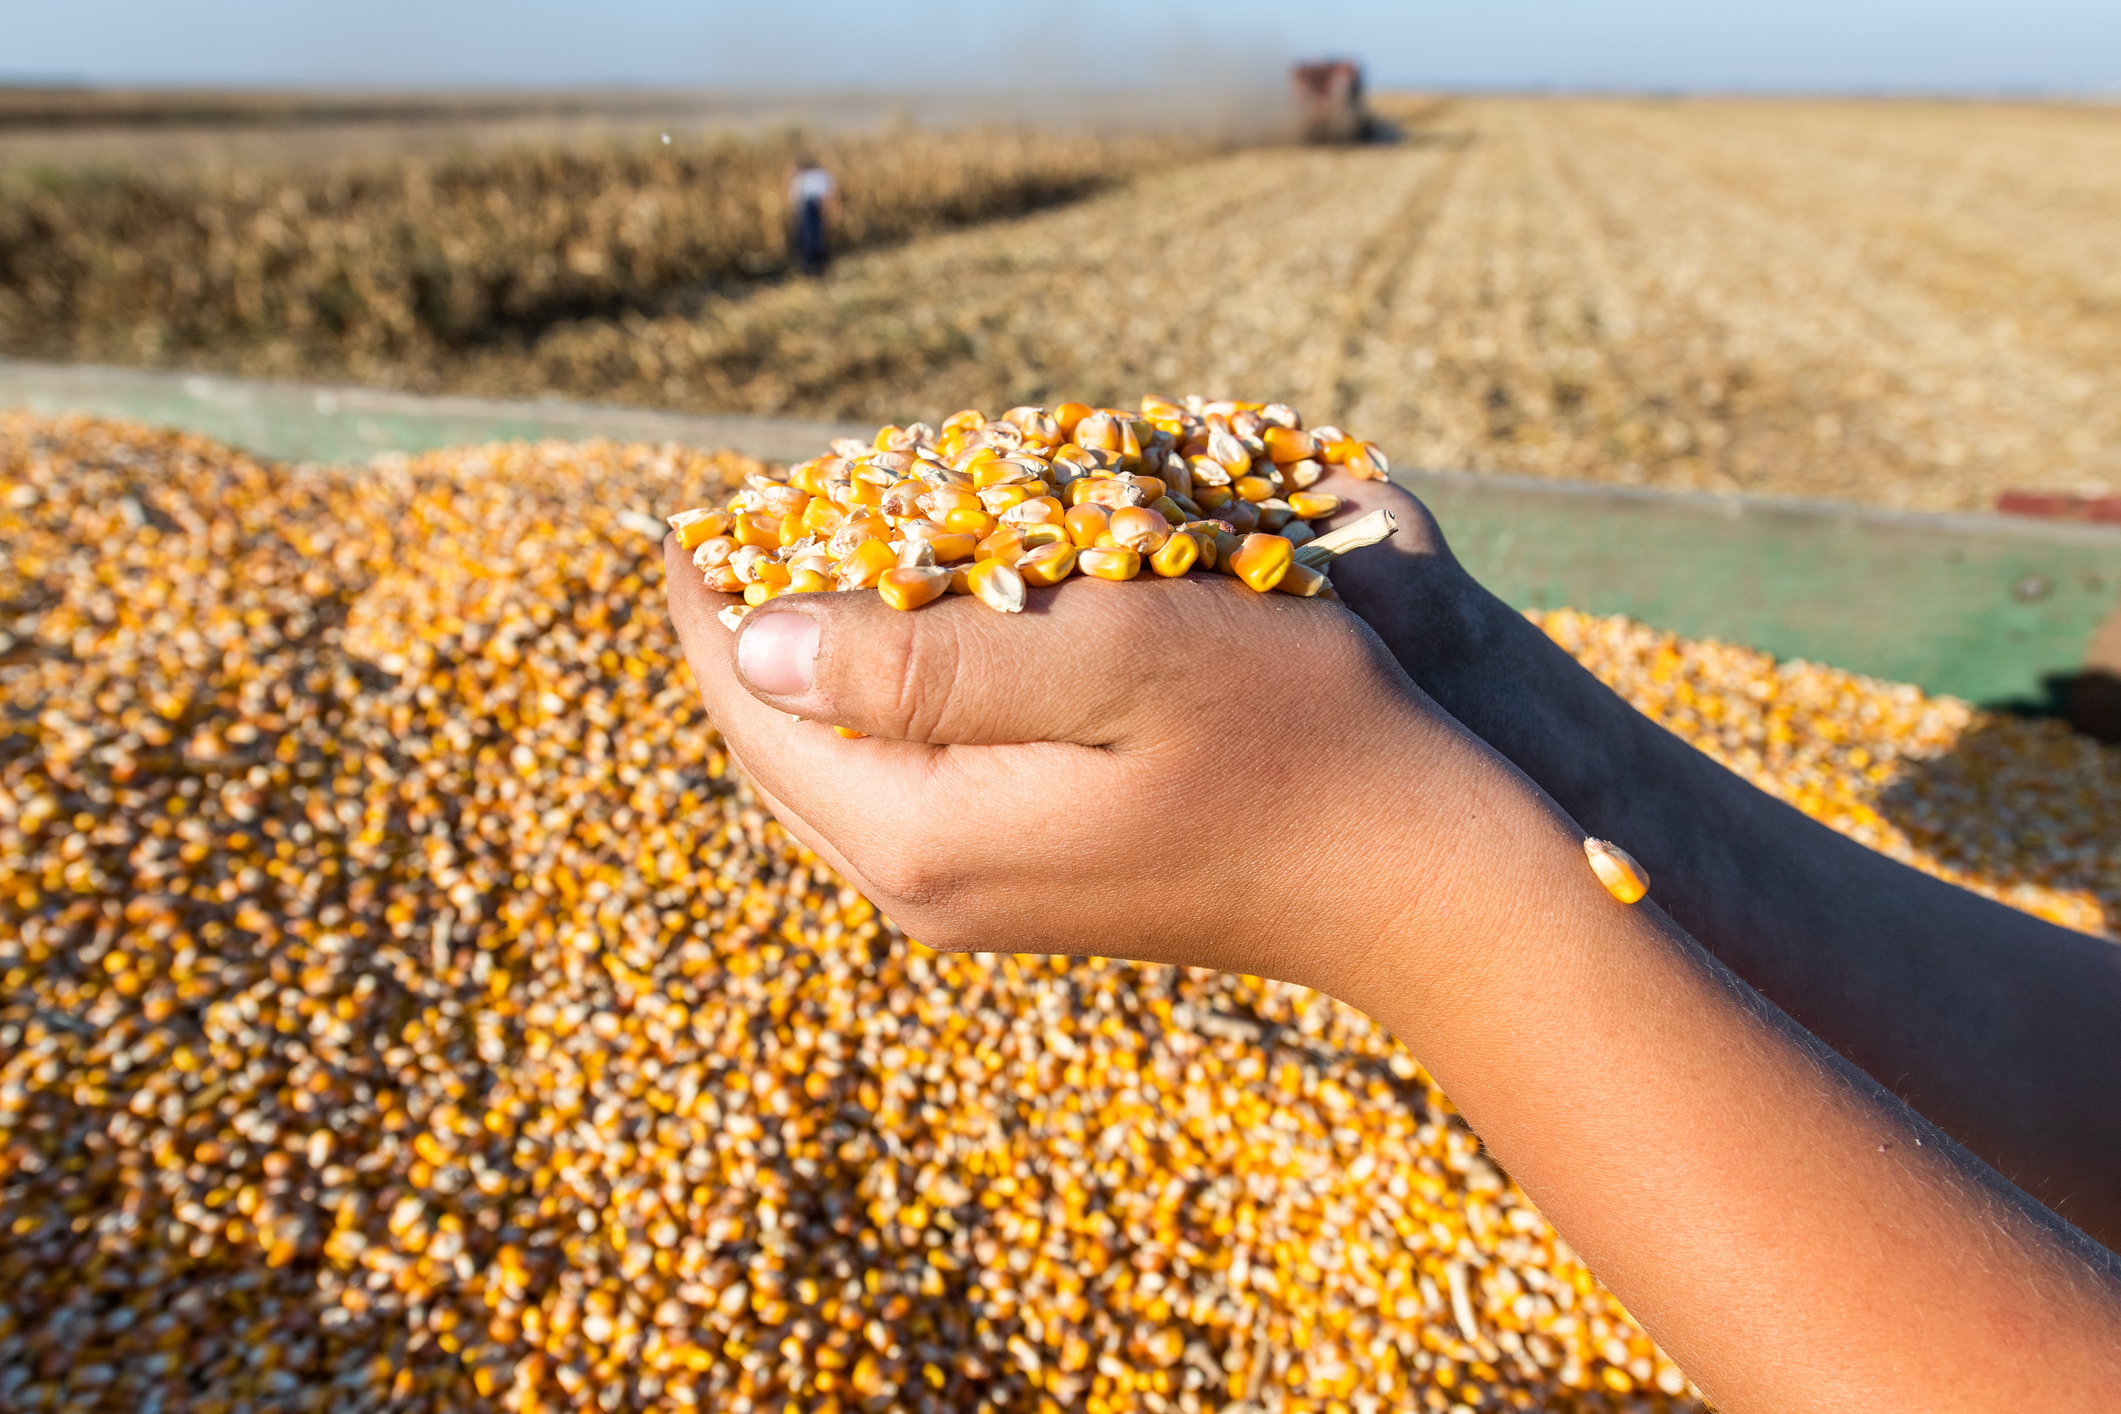 Hands holding kernels of corn.